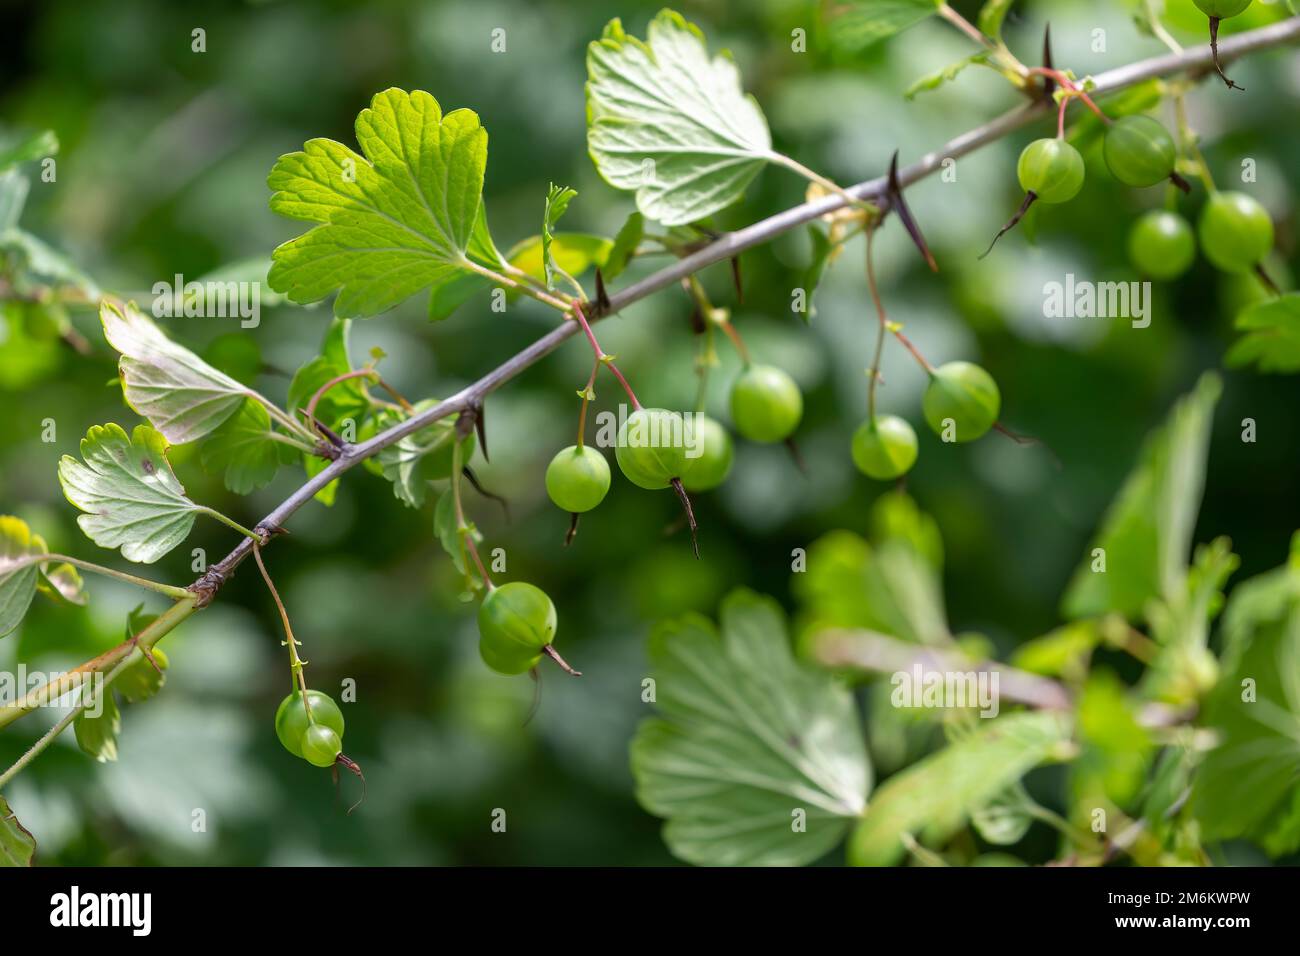 Ribes uva-crispa, Wild Gooseberry known as gooseberry or European gooseberry Stock Photo